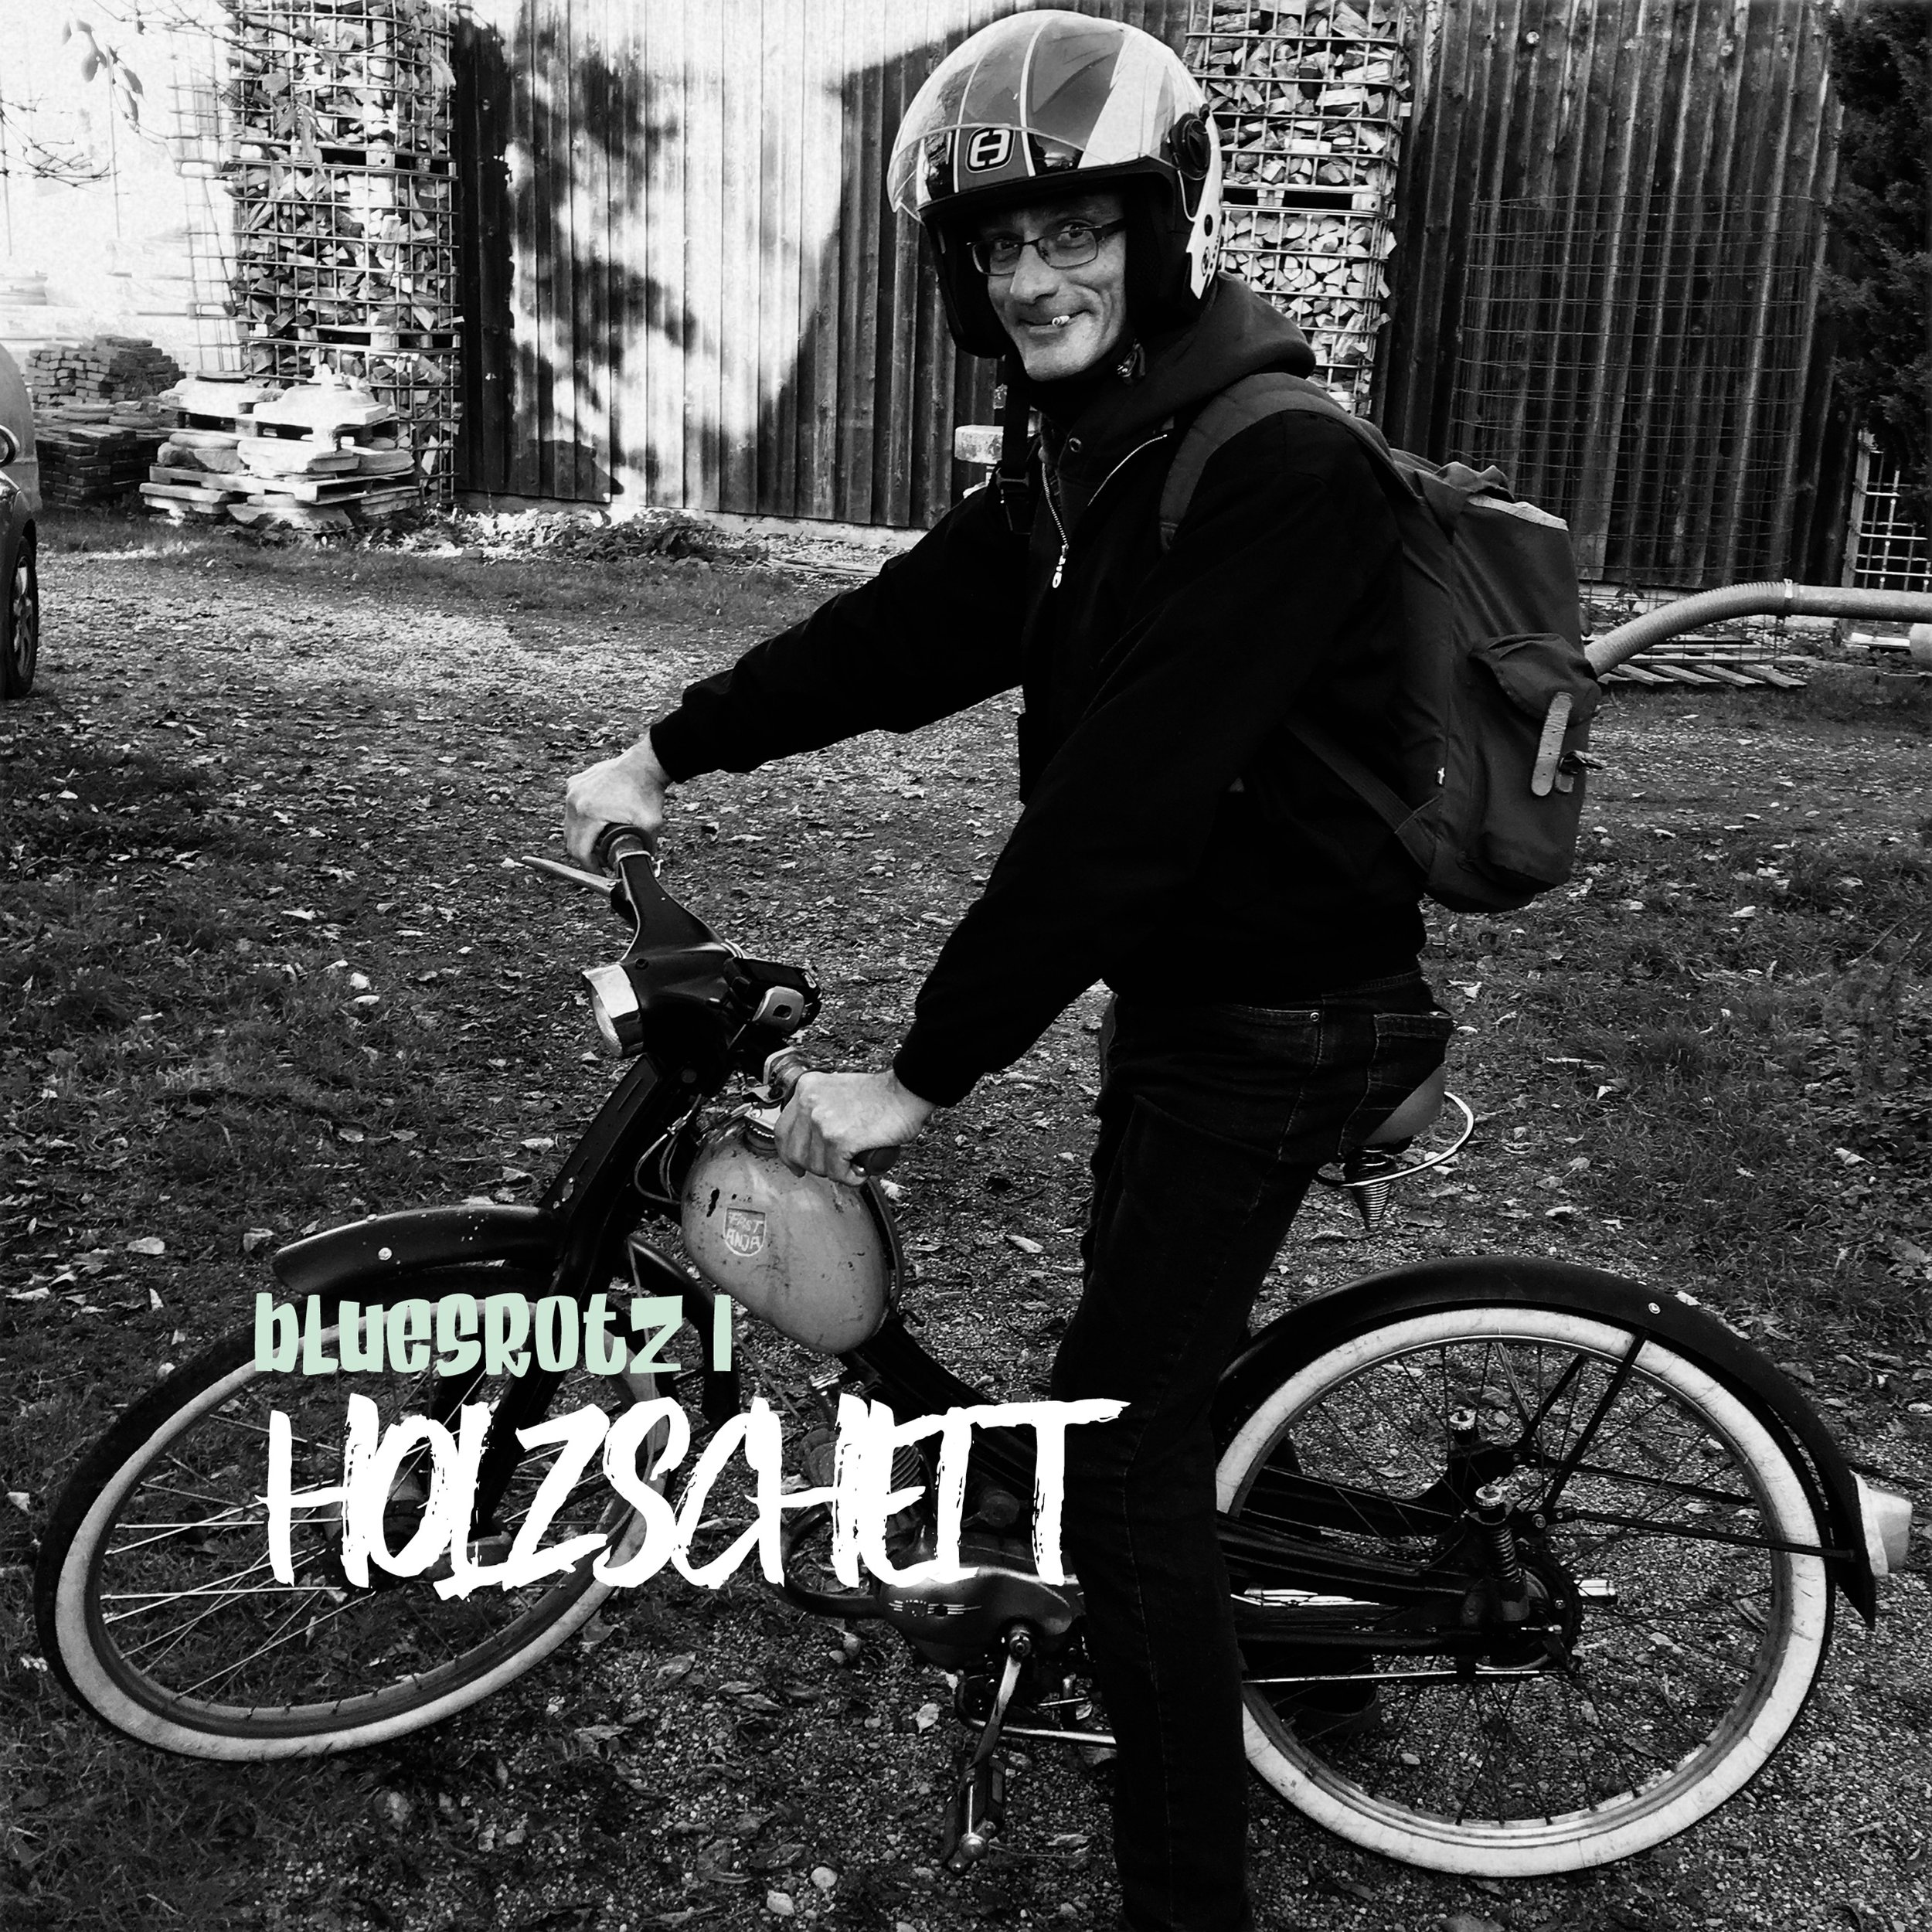 2022 - HOLZSCHEIT - Bluesrotz I (album)